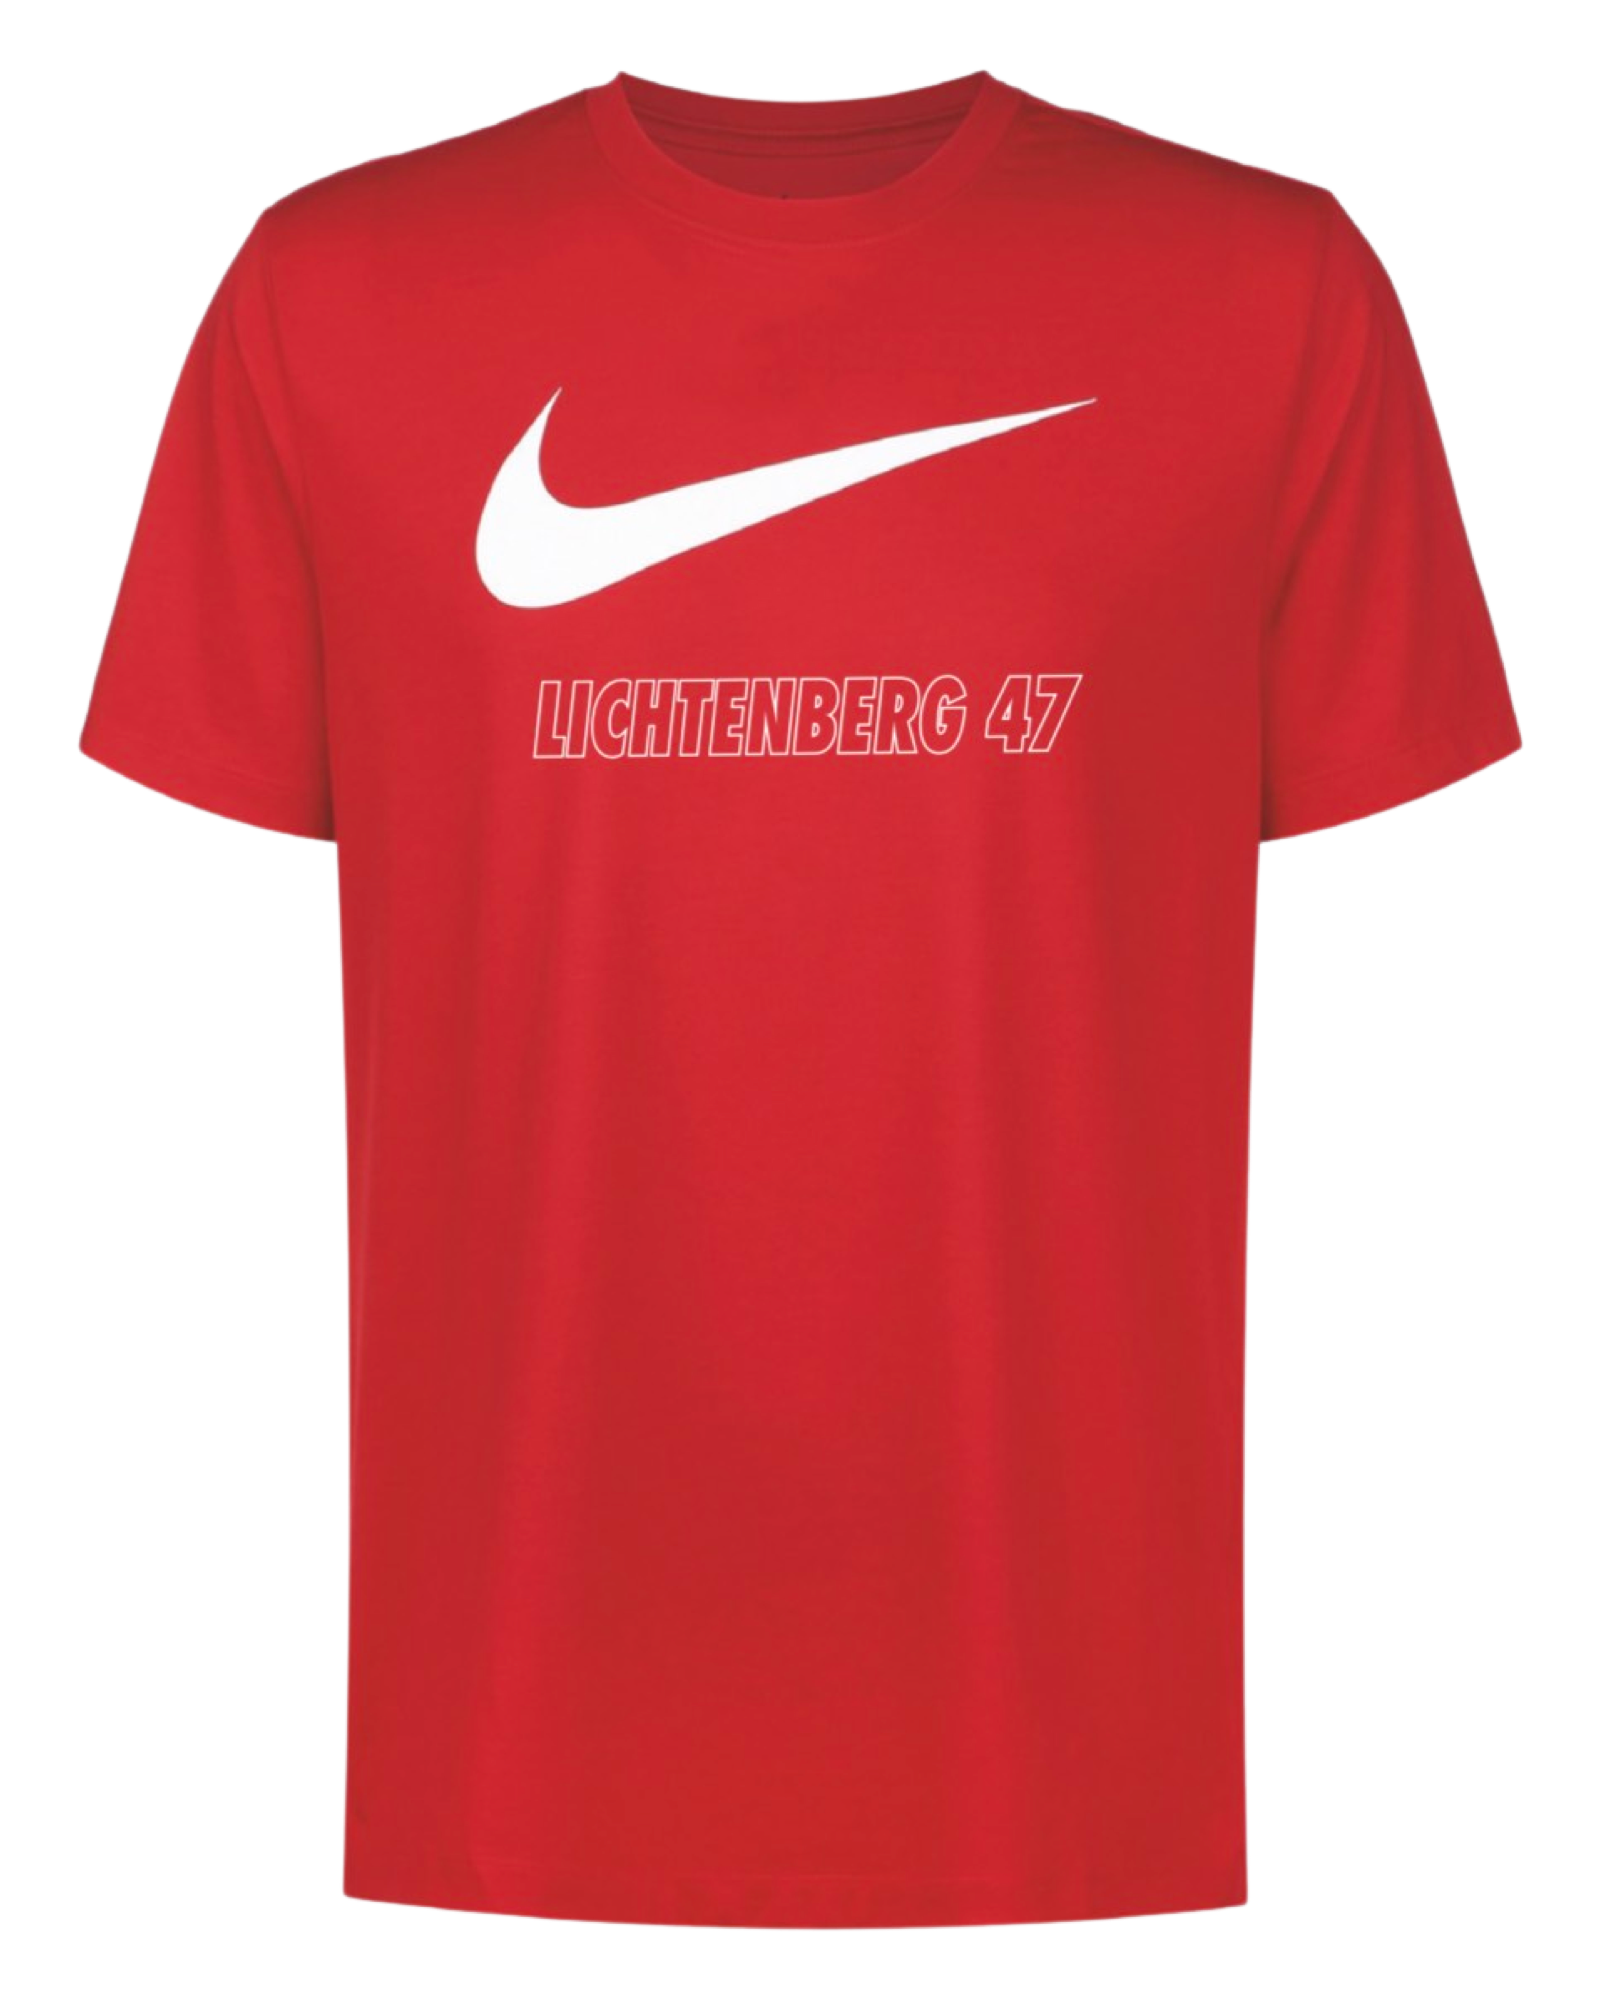 Nike 47er T-Shirt Rot - Lichtenberg 47